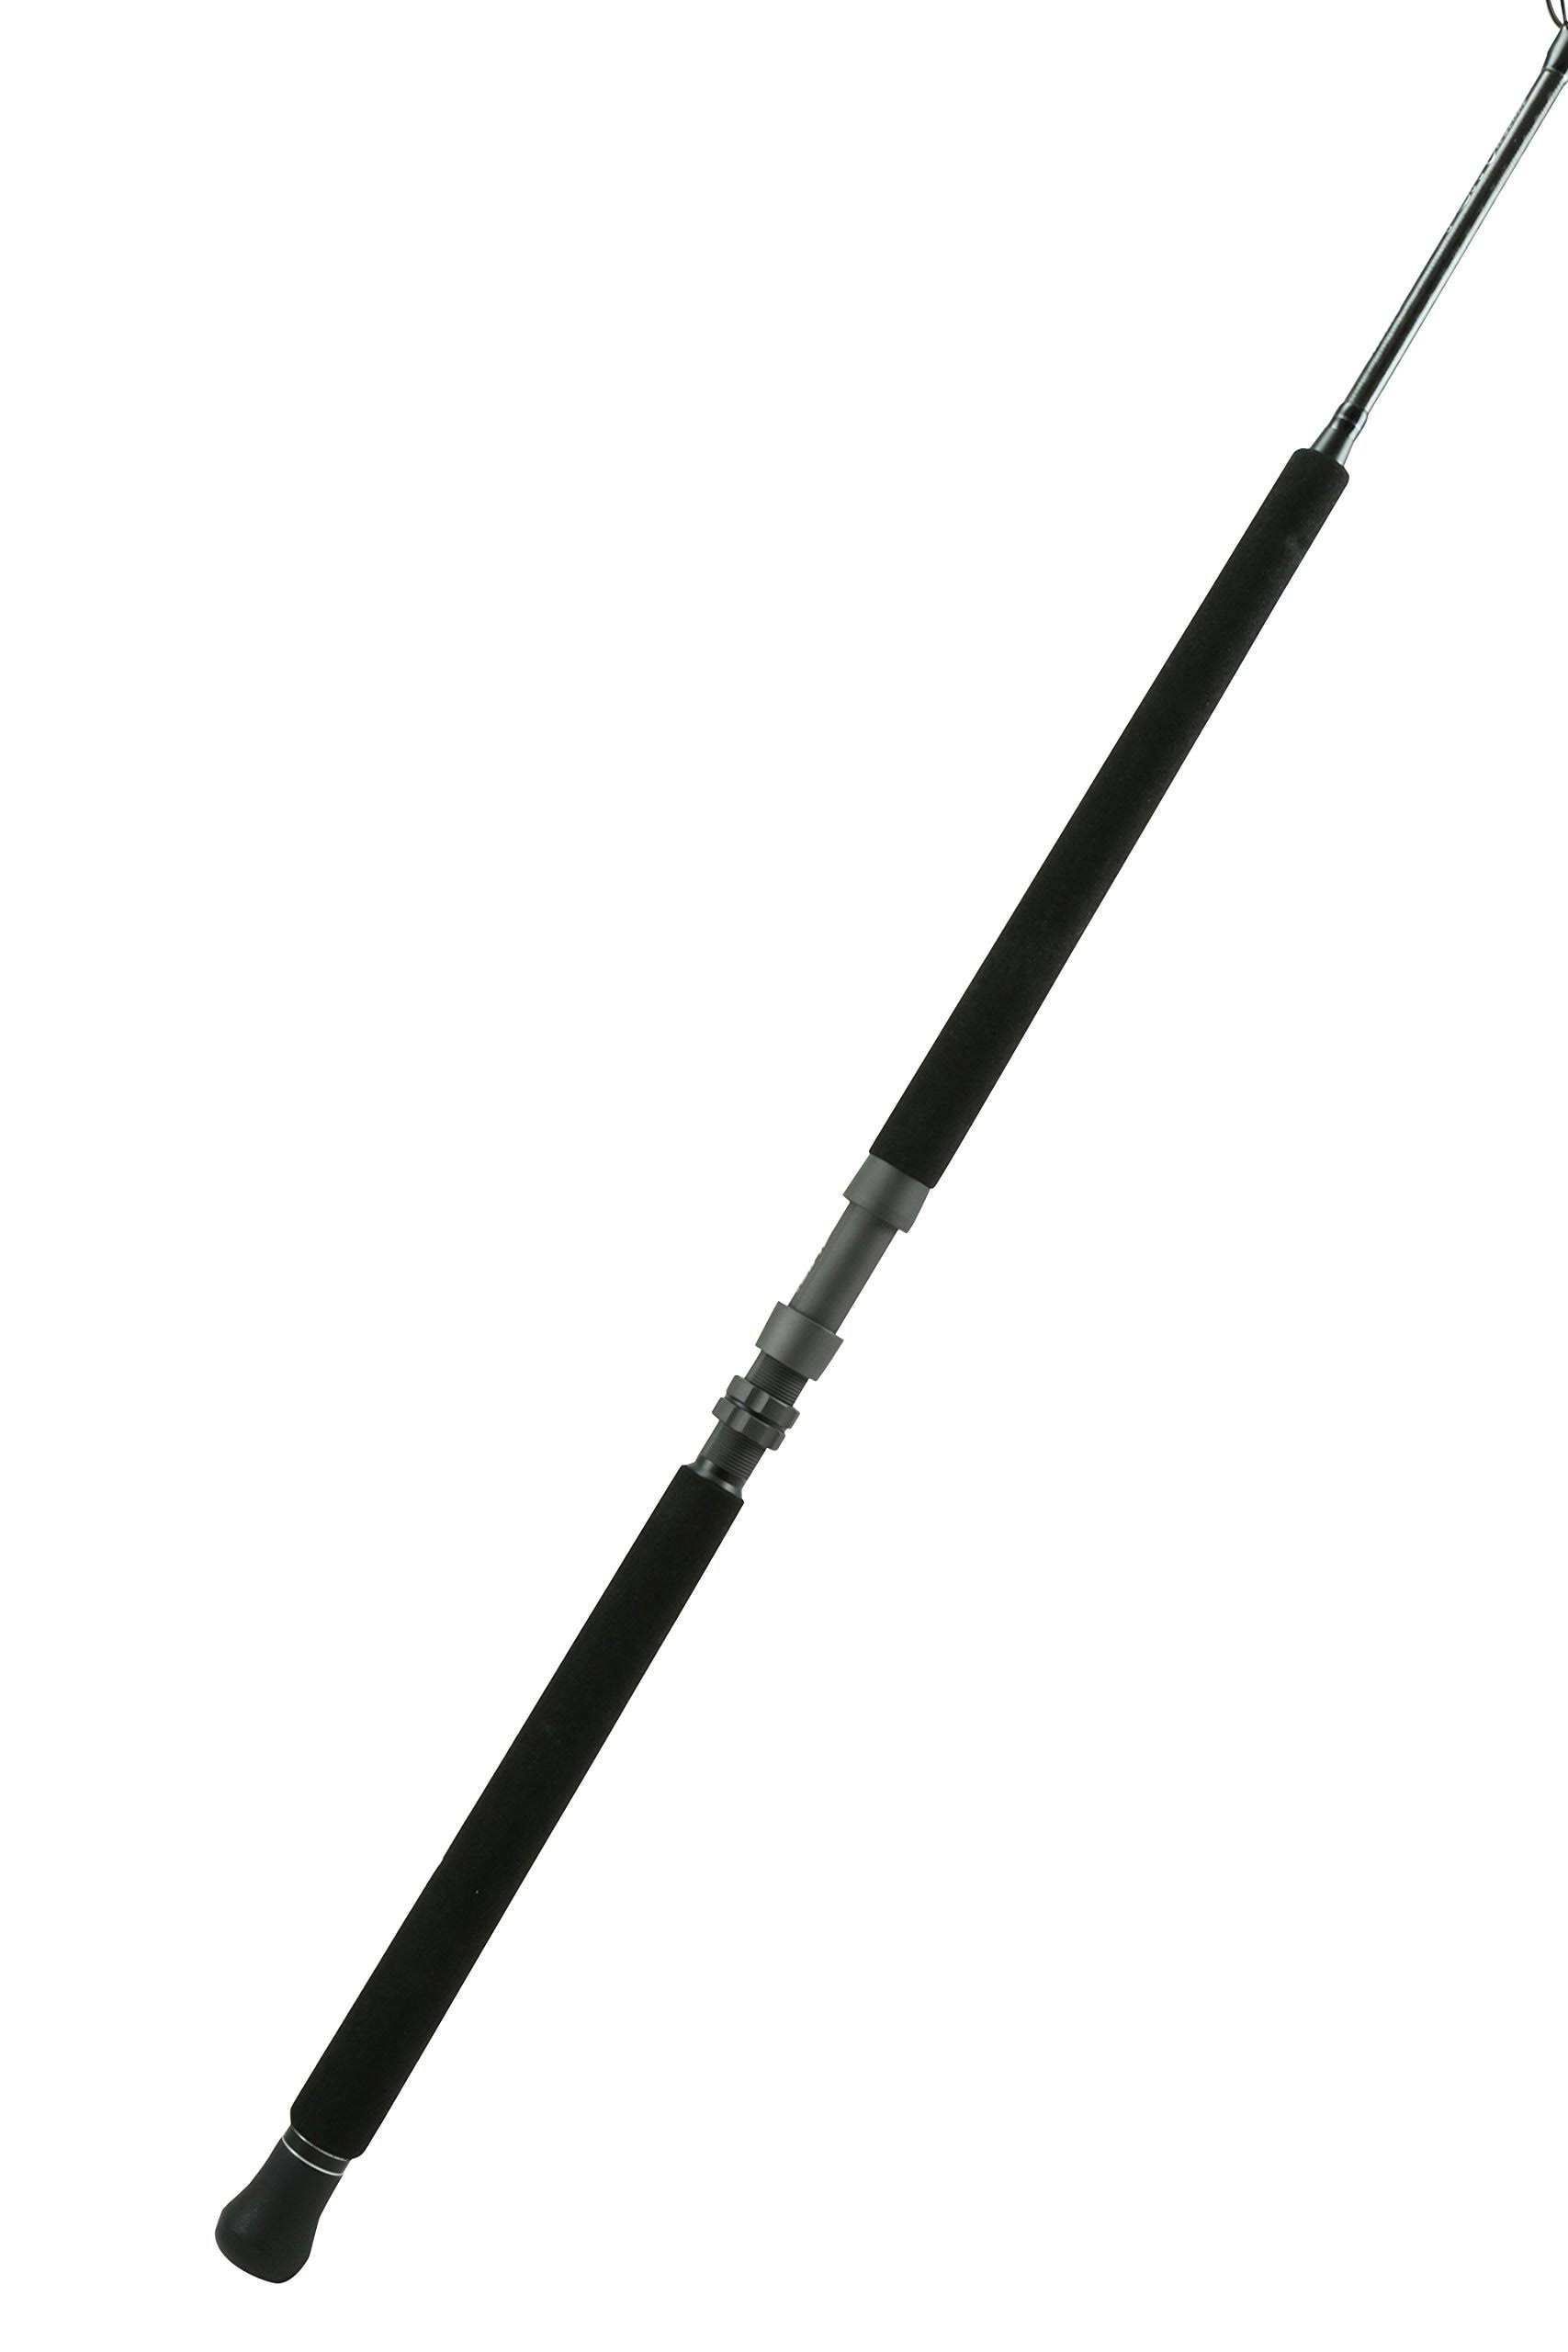 Okuma PCH Custom Rod 7' 6" XH 1-pcs 30-60 lbs